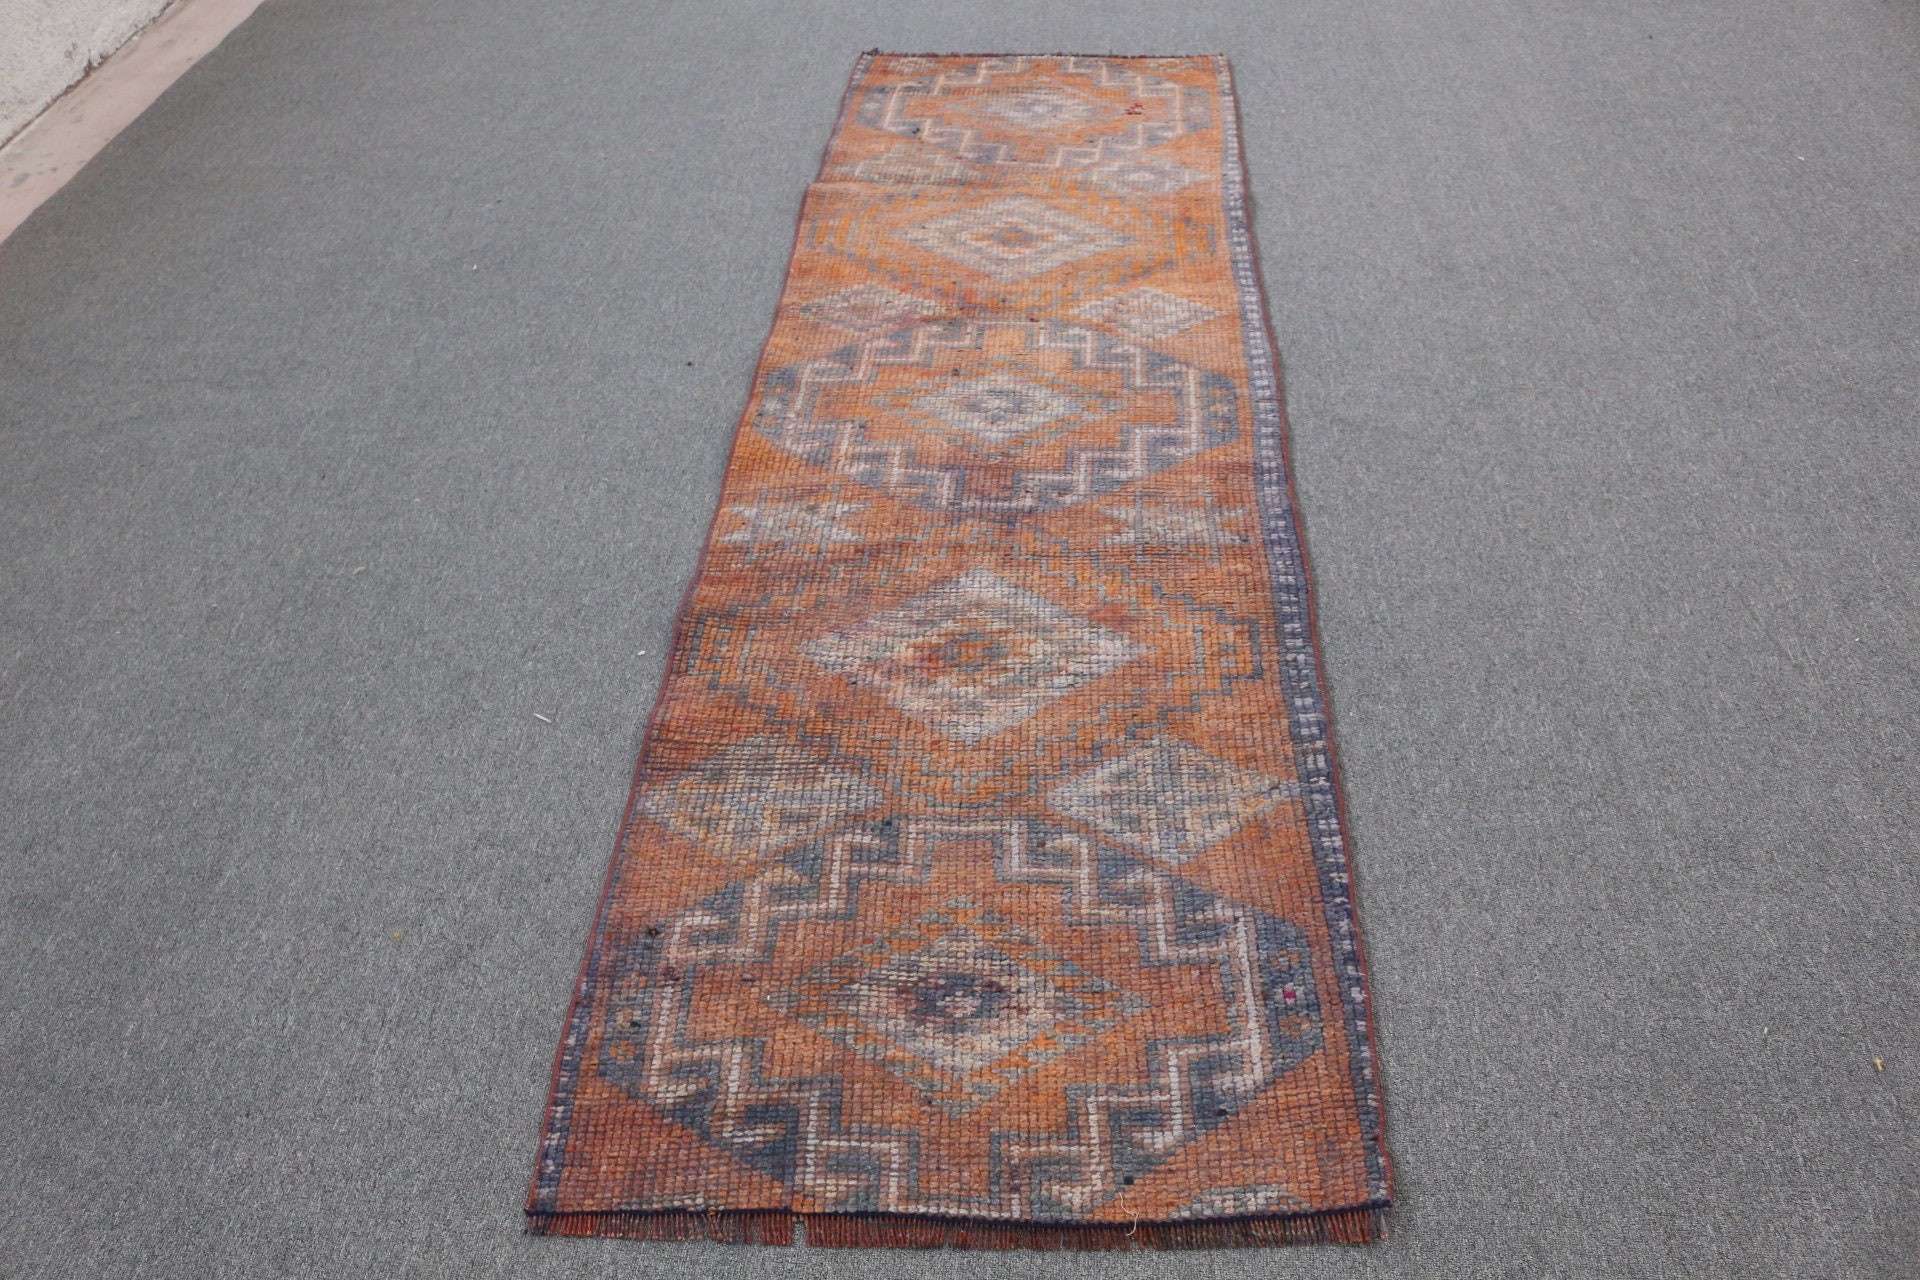 Turkish Rug, Cool Rugs, Vintage Rugs, Rugs for Stair, Handmade Rug, Kitchen Rug, Orange Floor Rugs, 2.6x8.4 ft Runner Rug, Anatolian Rug